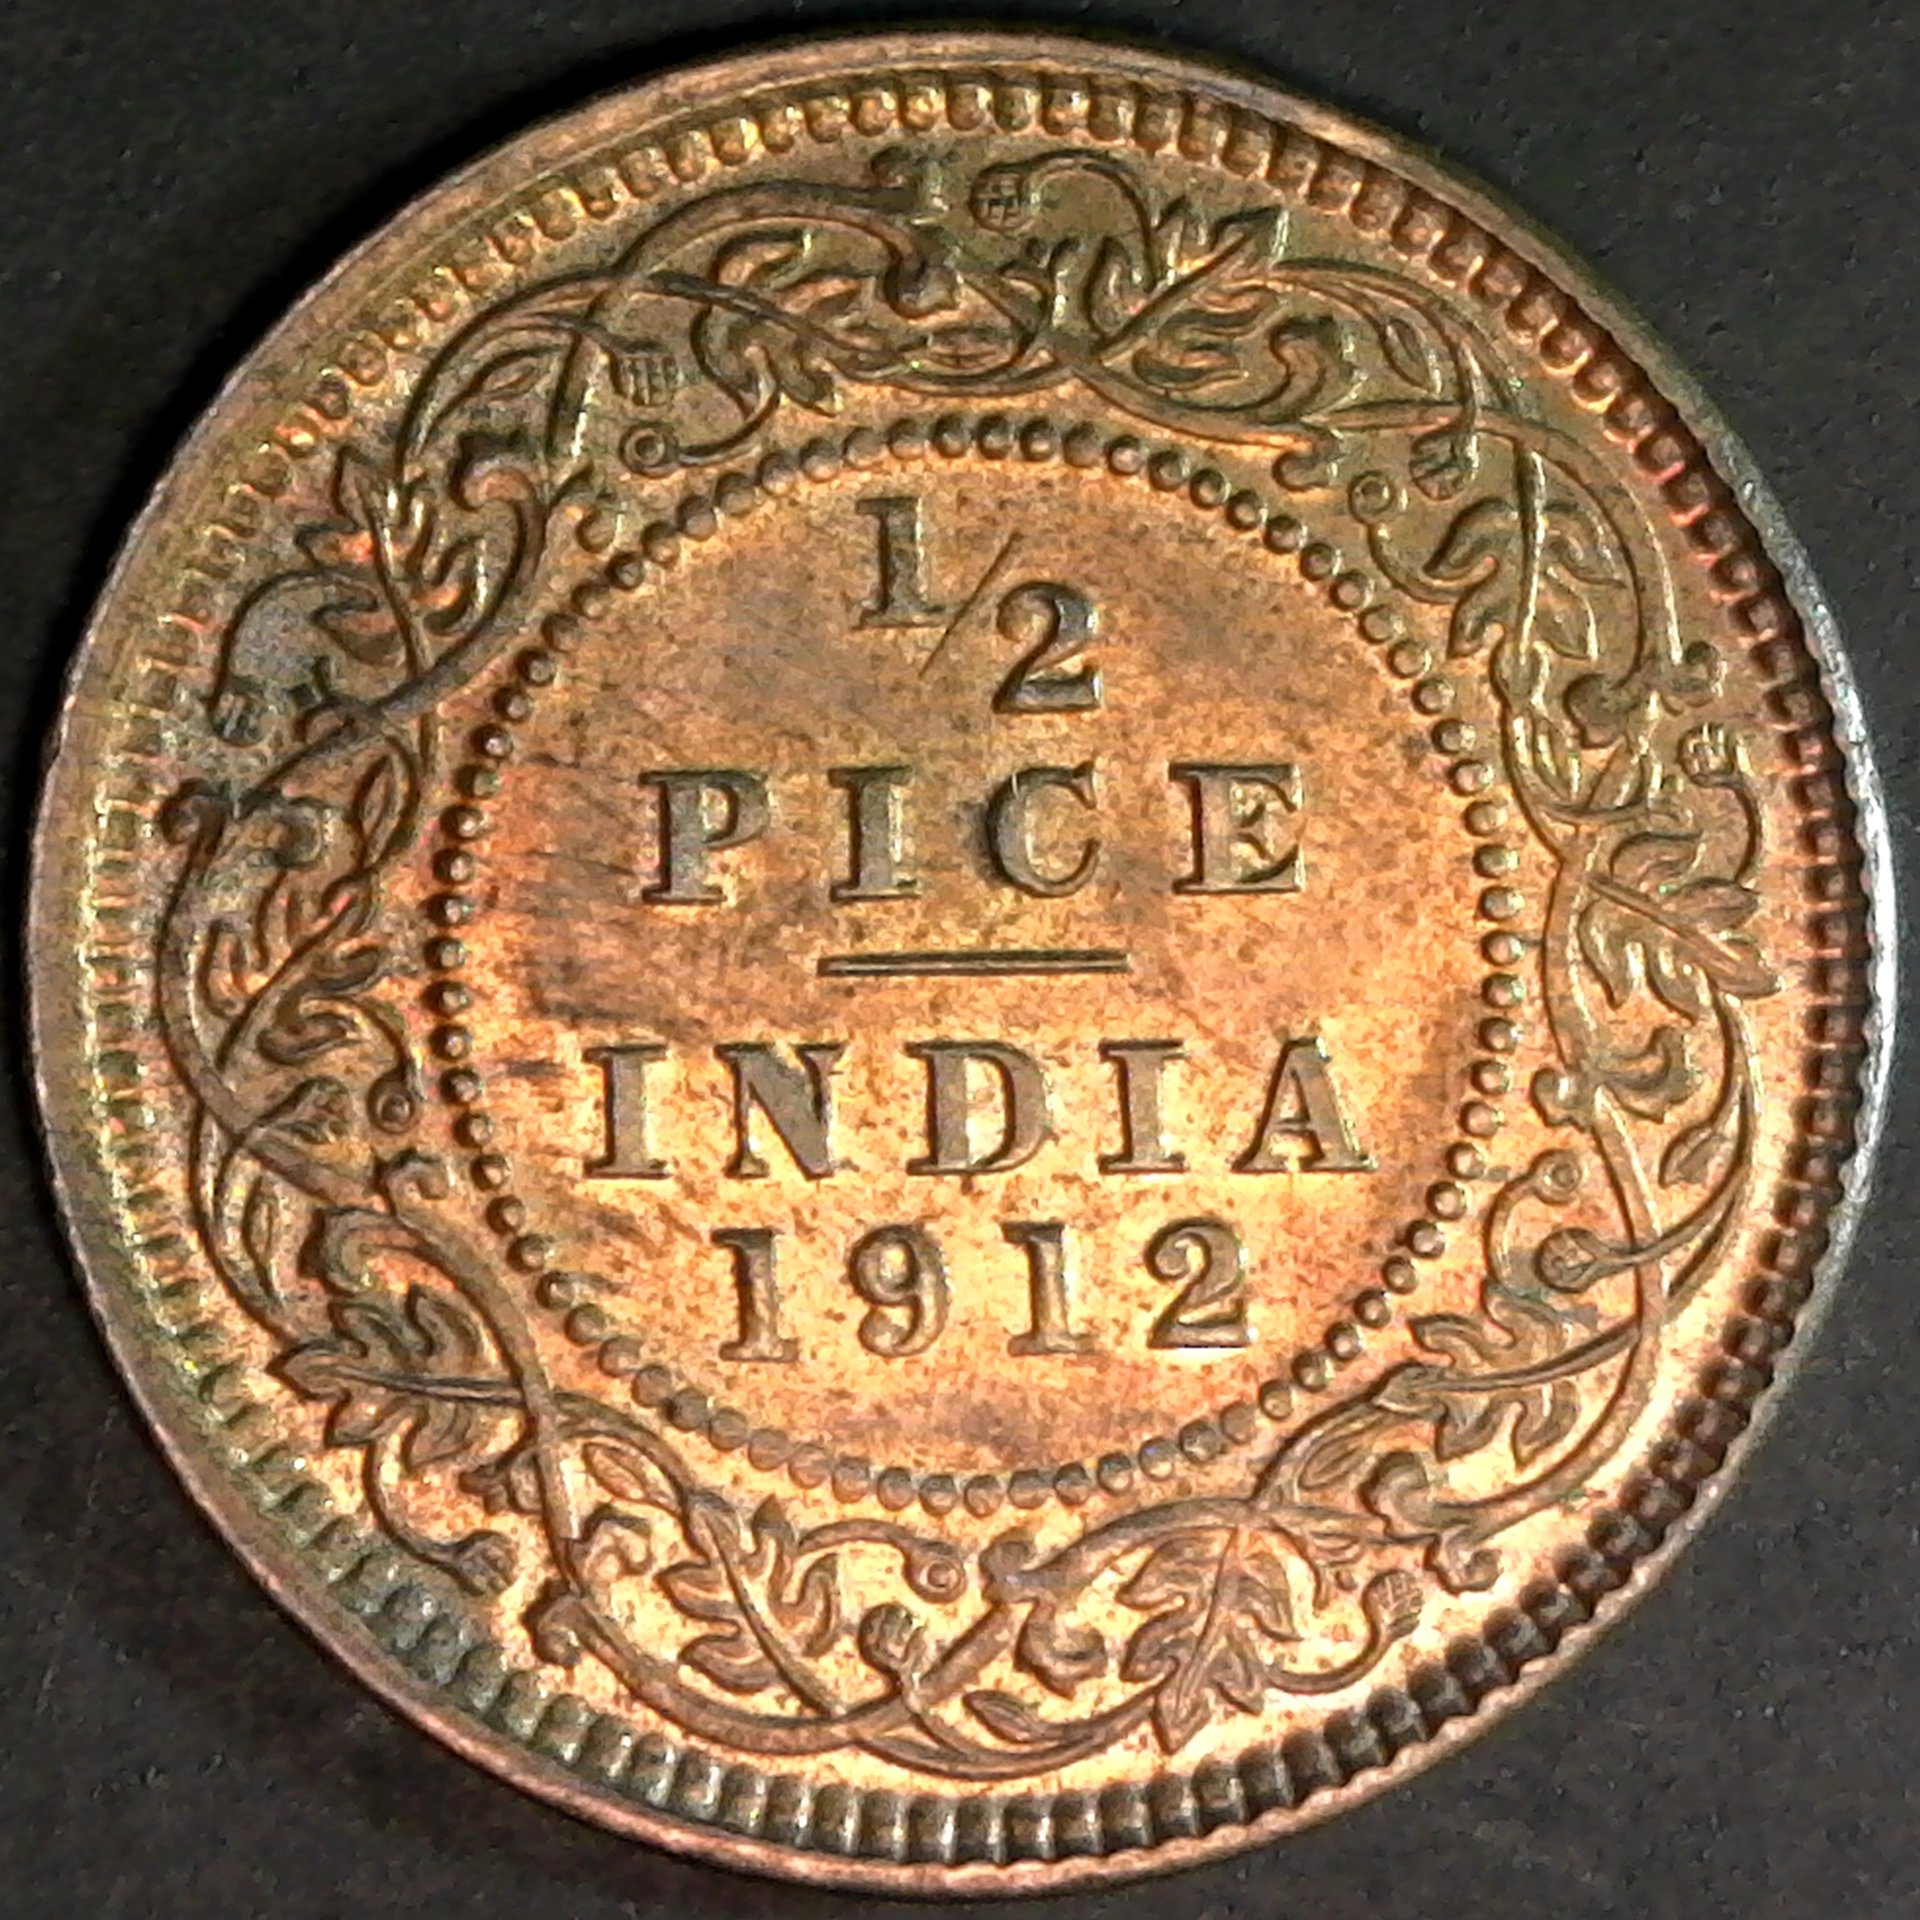 India Half Pice 1912 rev.jpg